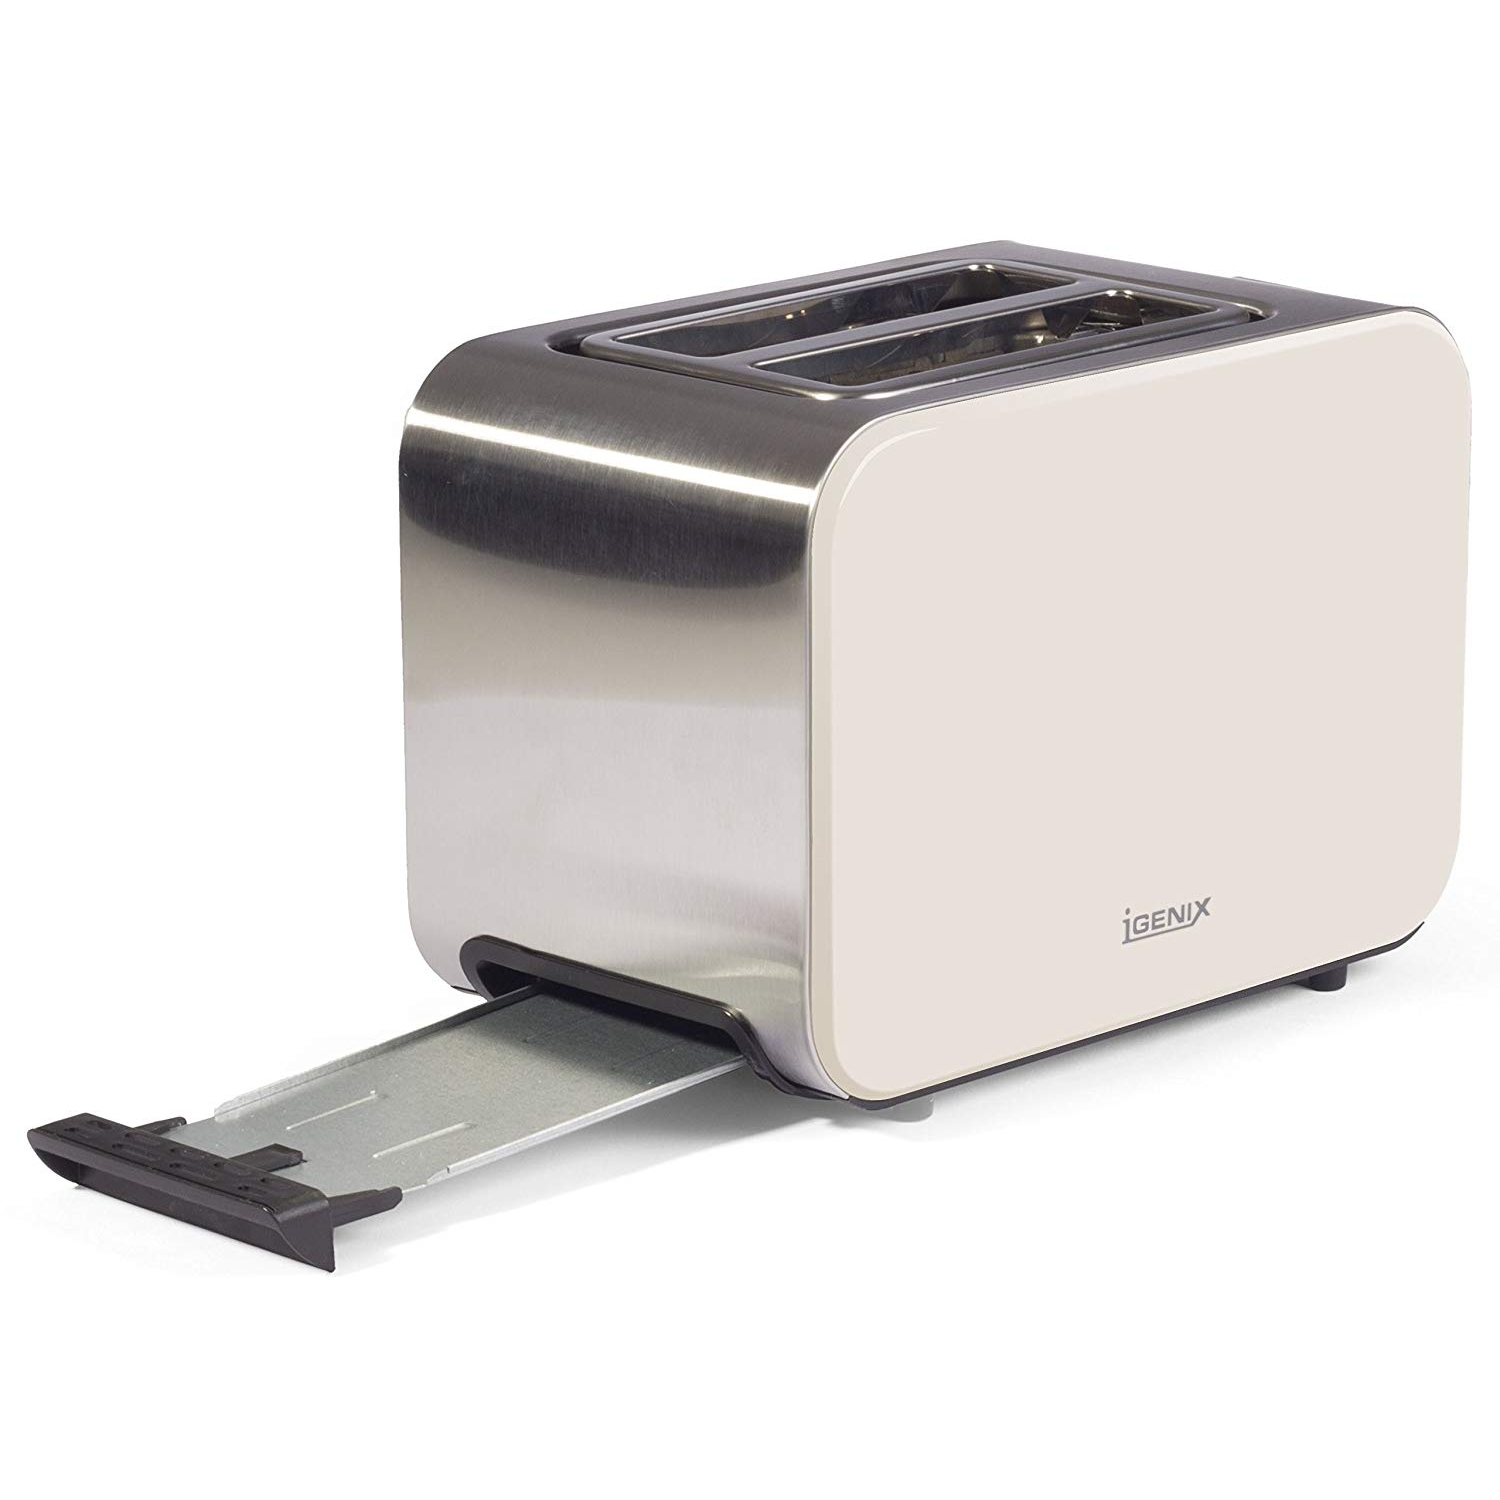 Igenix 2 Slice Toaster (stainless steel) - 2